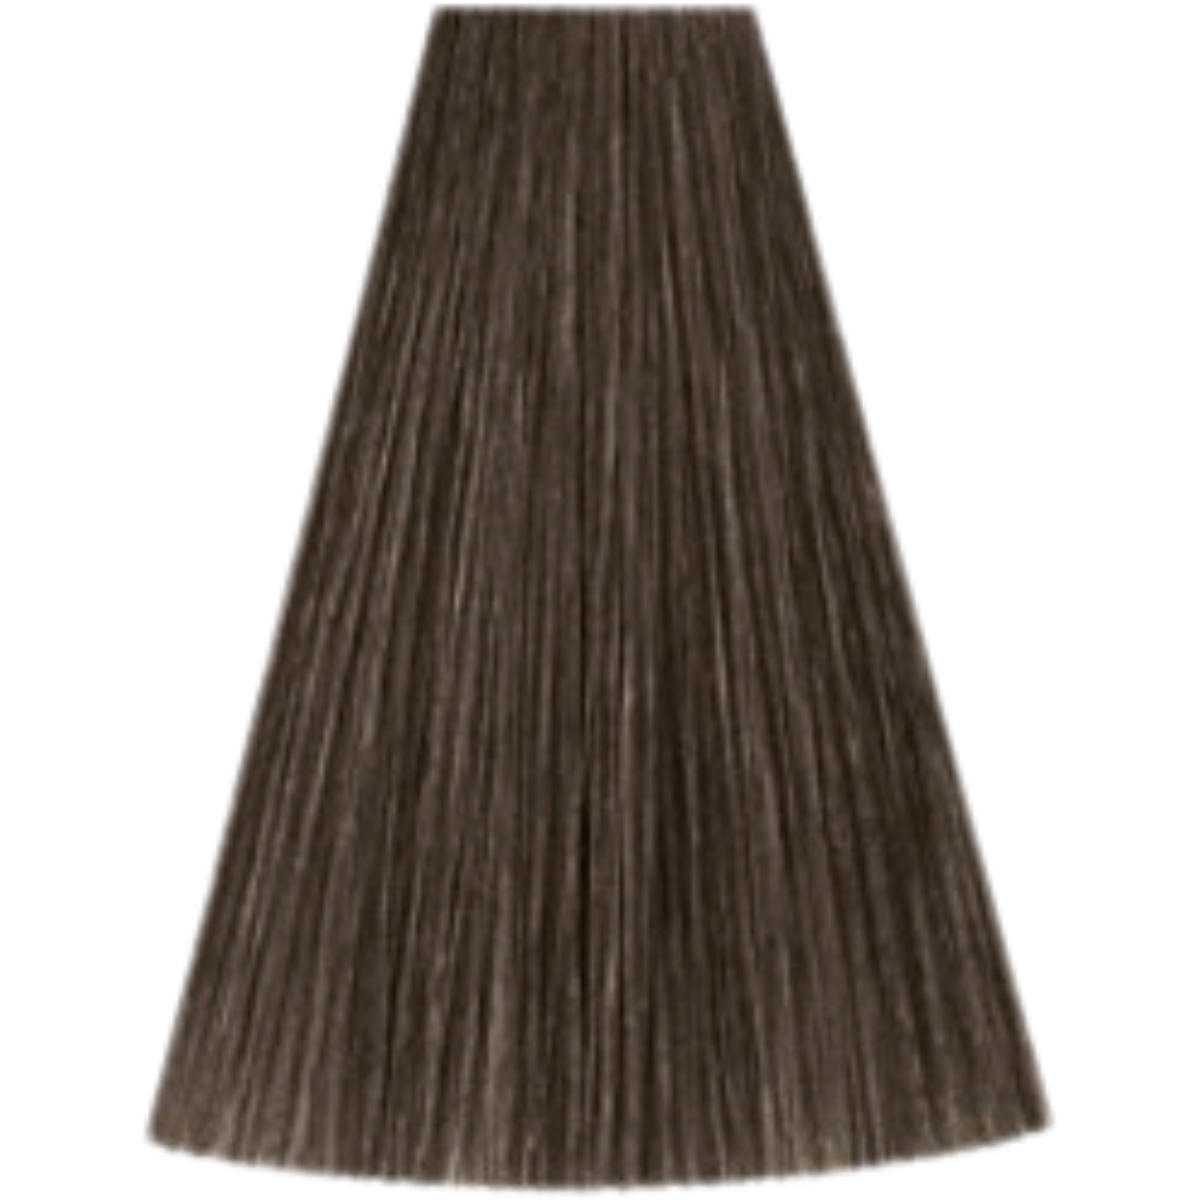 צבע שיער 7/18 MEDIUM BLONDE ASH PEARL קאדוס KADUS צבע לשיער 60 גרם